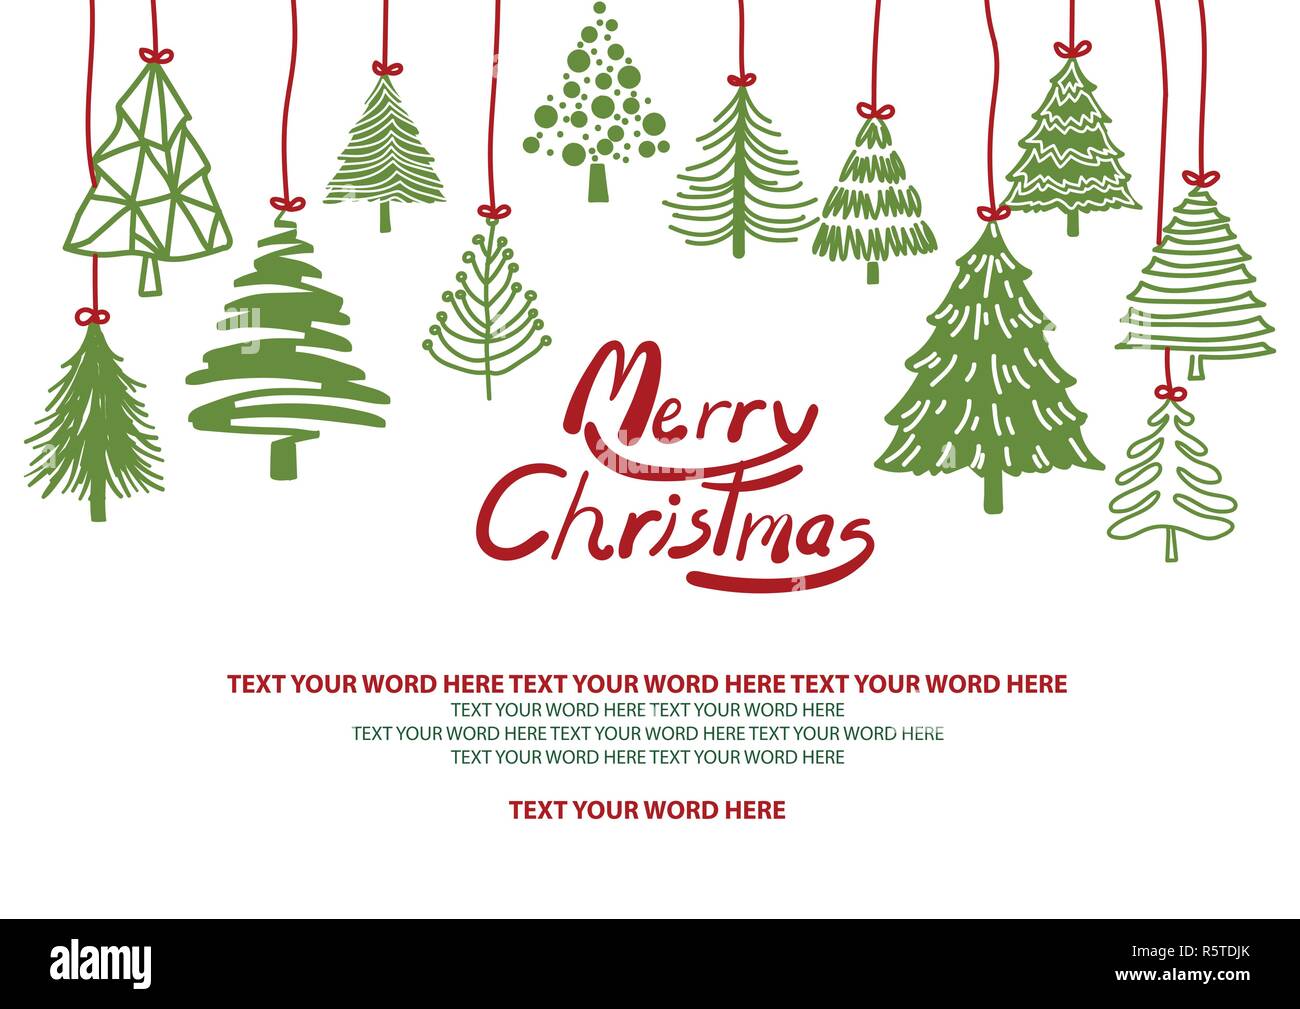 Decorazioni Natalizie Word.Il Design Dello Sfondo Per Il Natale In Semplice Piatto Piatto Disegnati A Mano Grafica Grafica